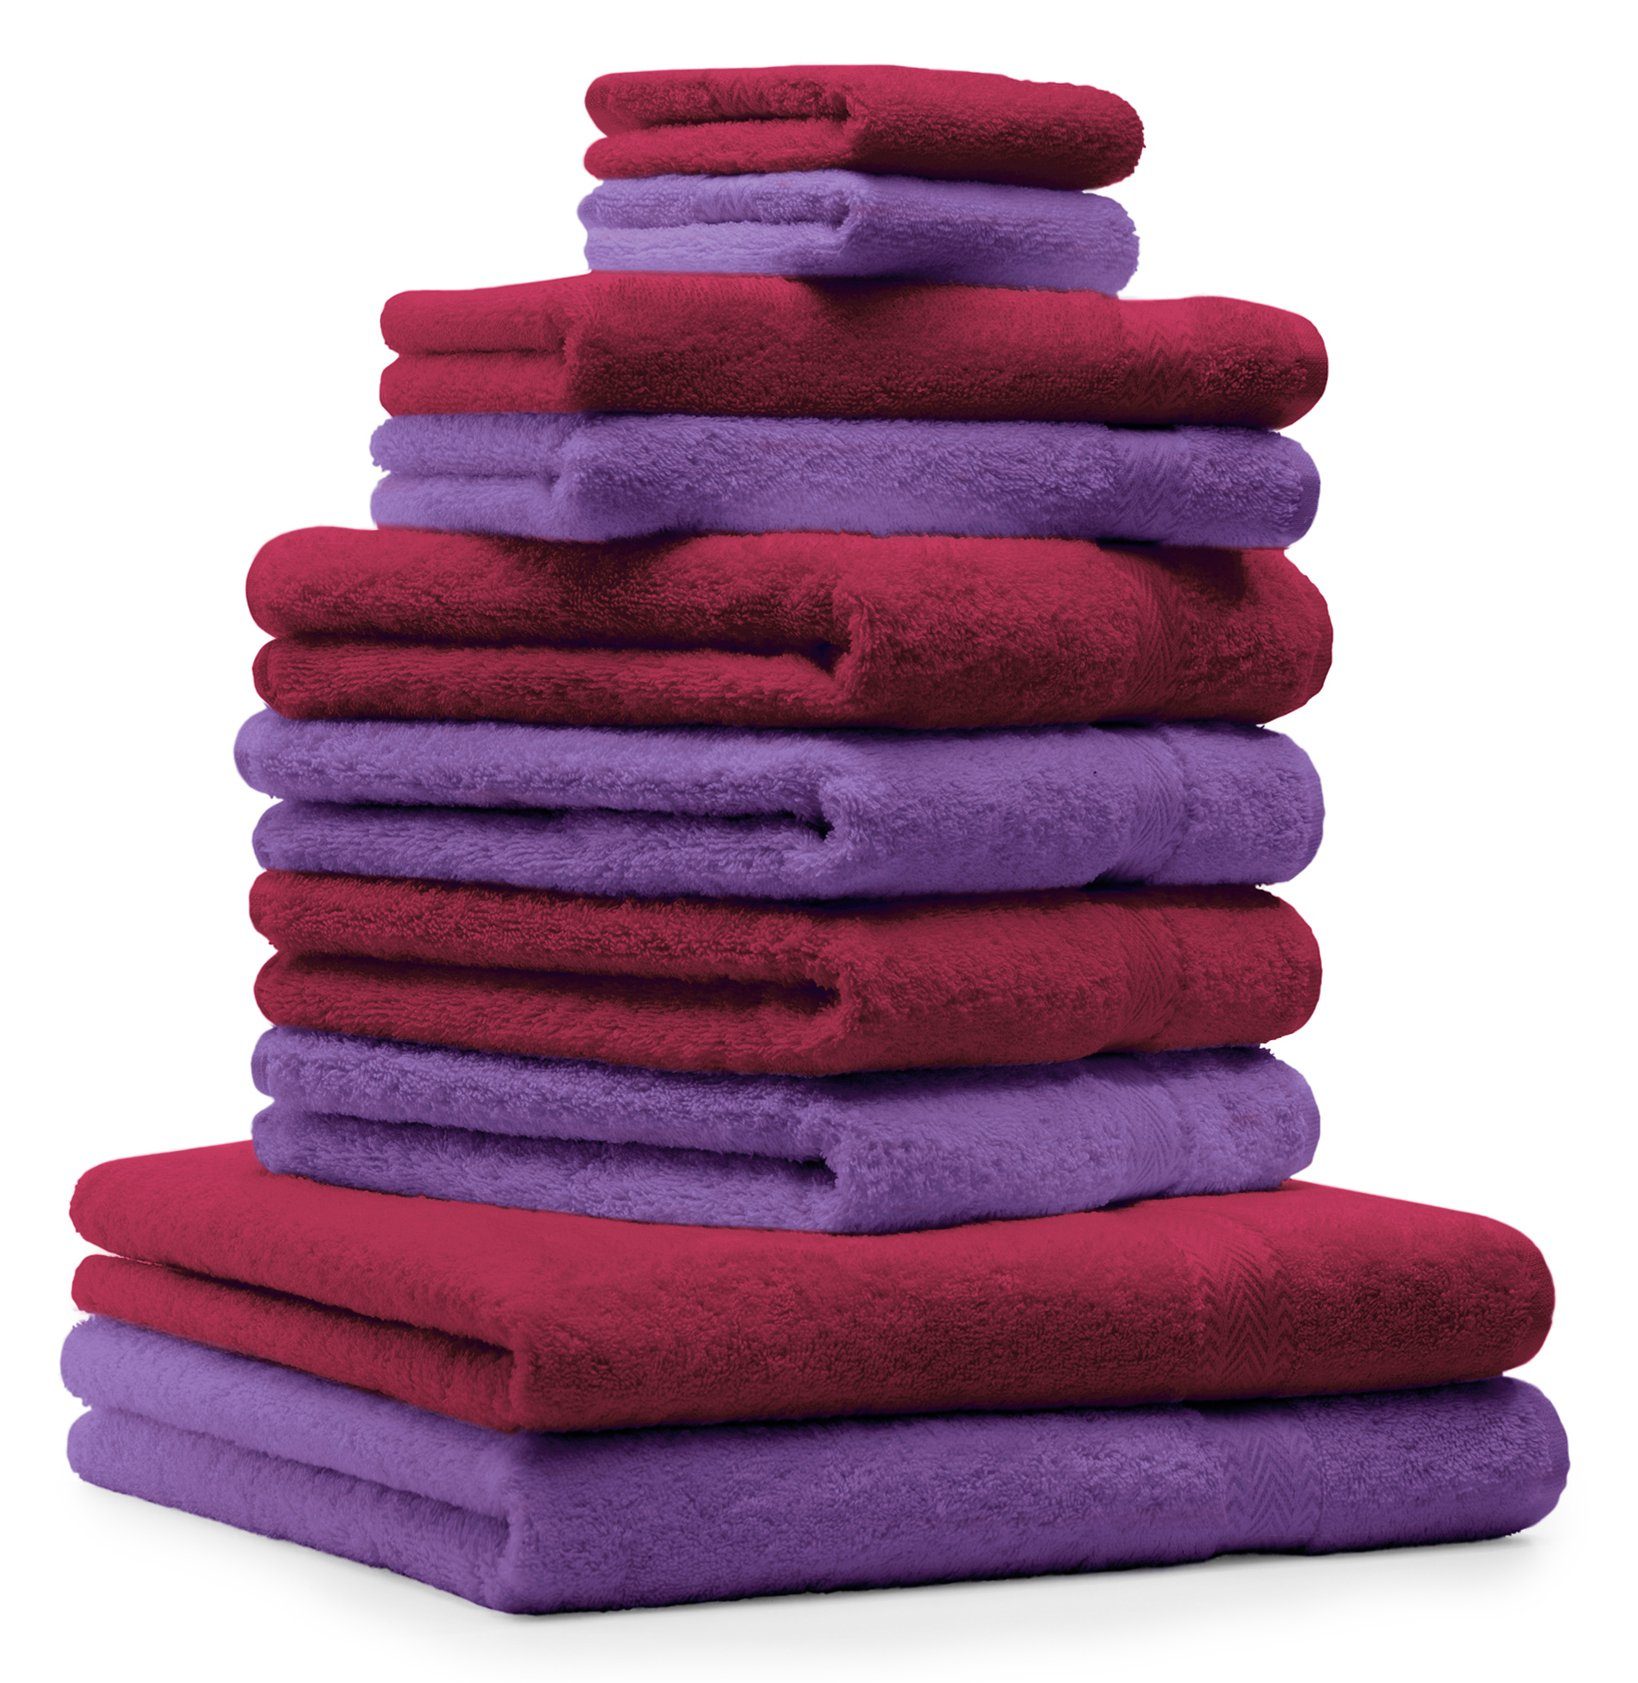 Betz Handtuch Set 10-TLG. Handtuch-Set Classic 100% Baumwolle dunkelrot und lila, 100% Baumwolle